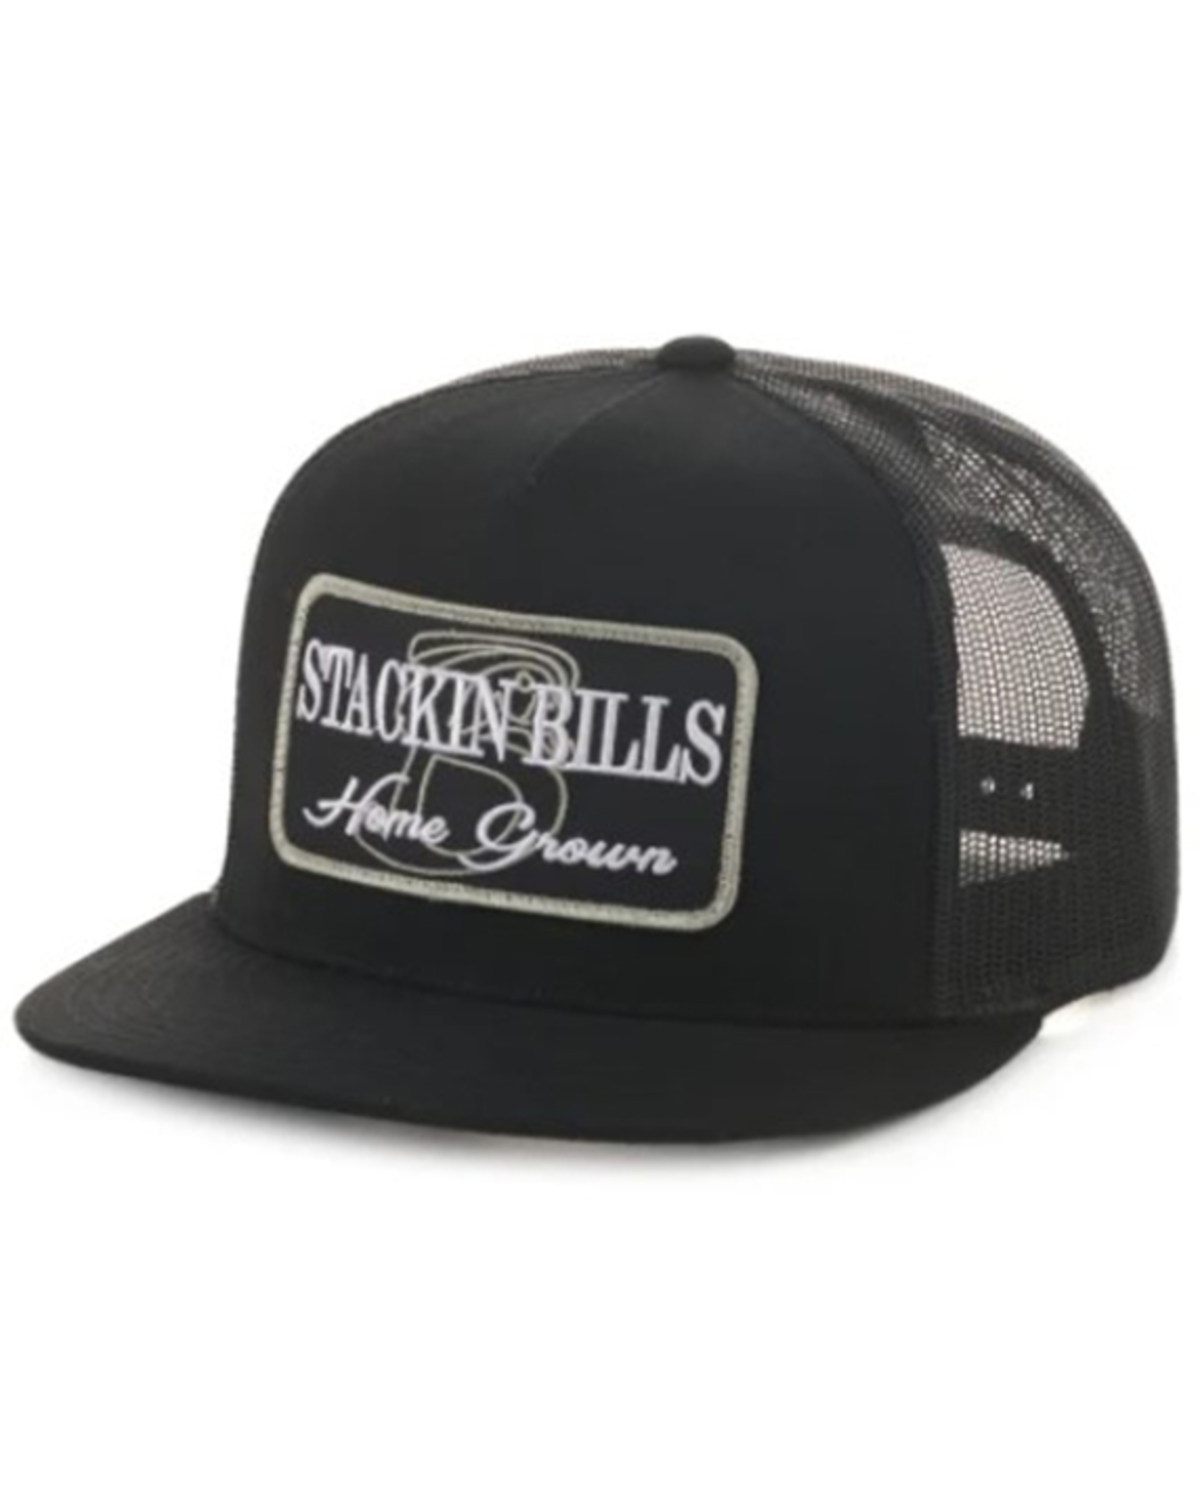 Stackin Bills Men's Home Grown Logo Trucker Cap